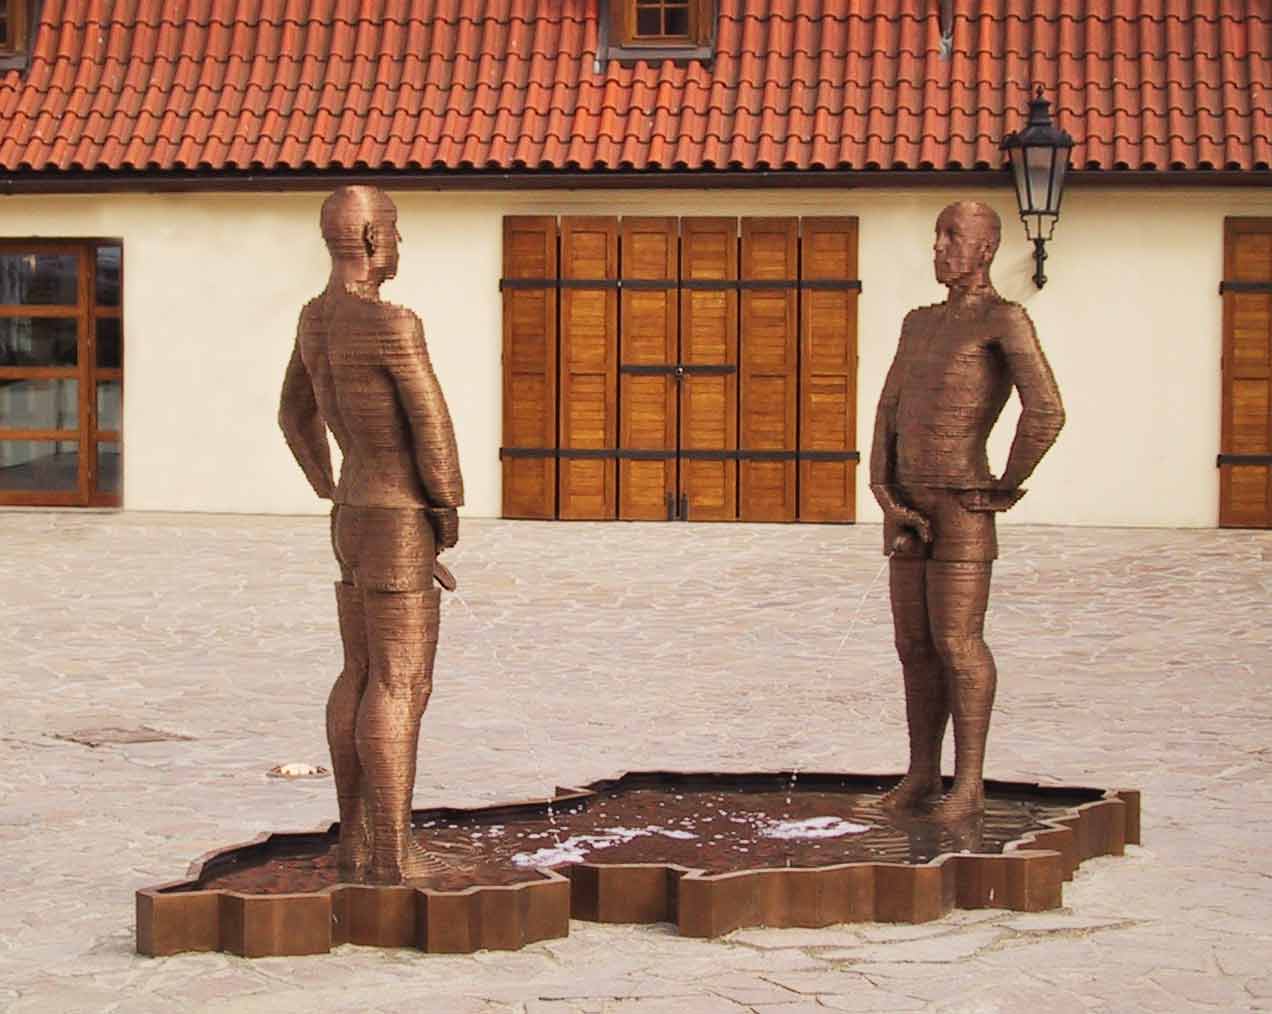 David Černý uit Praag, bijzondere sculpturen